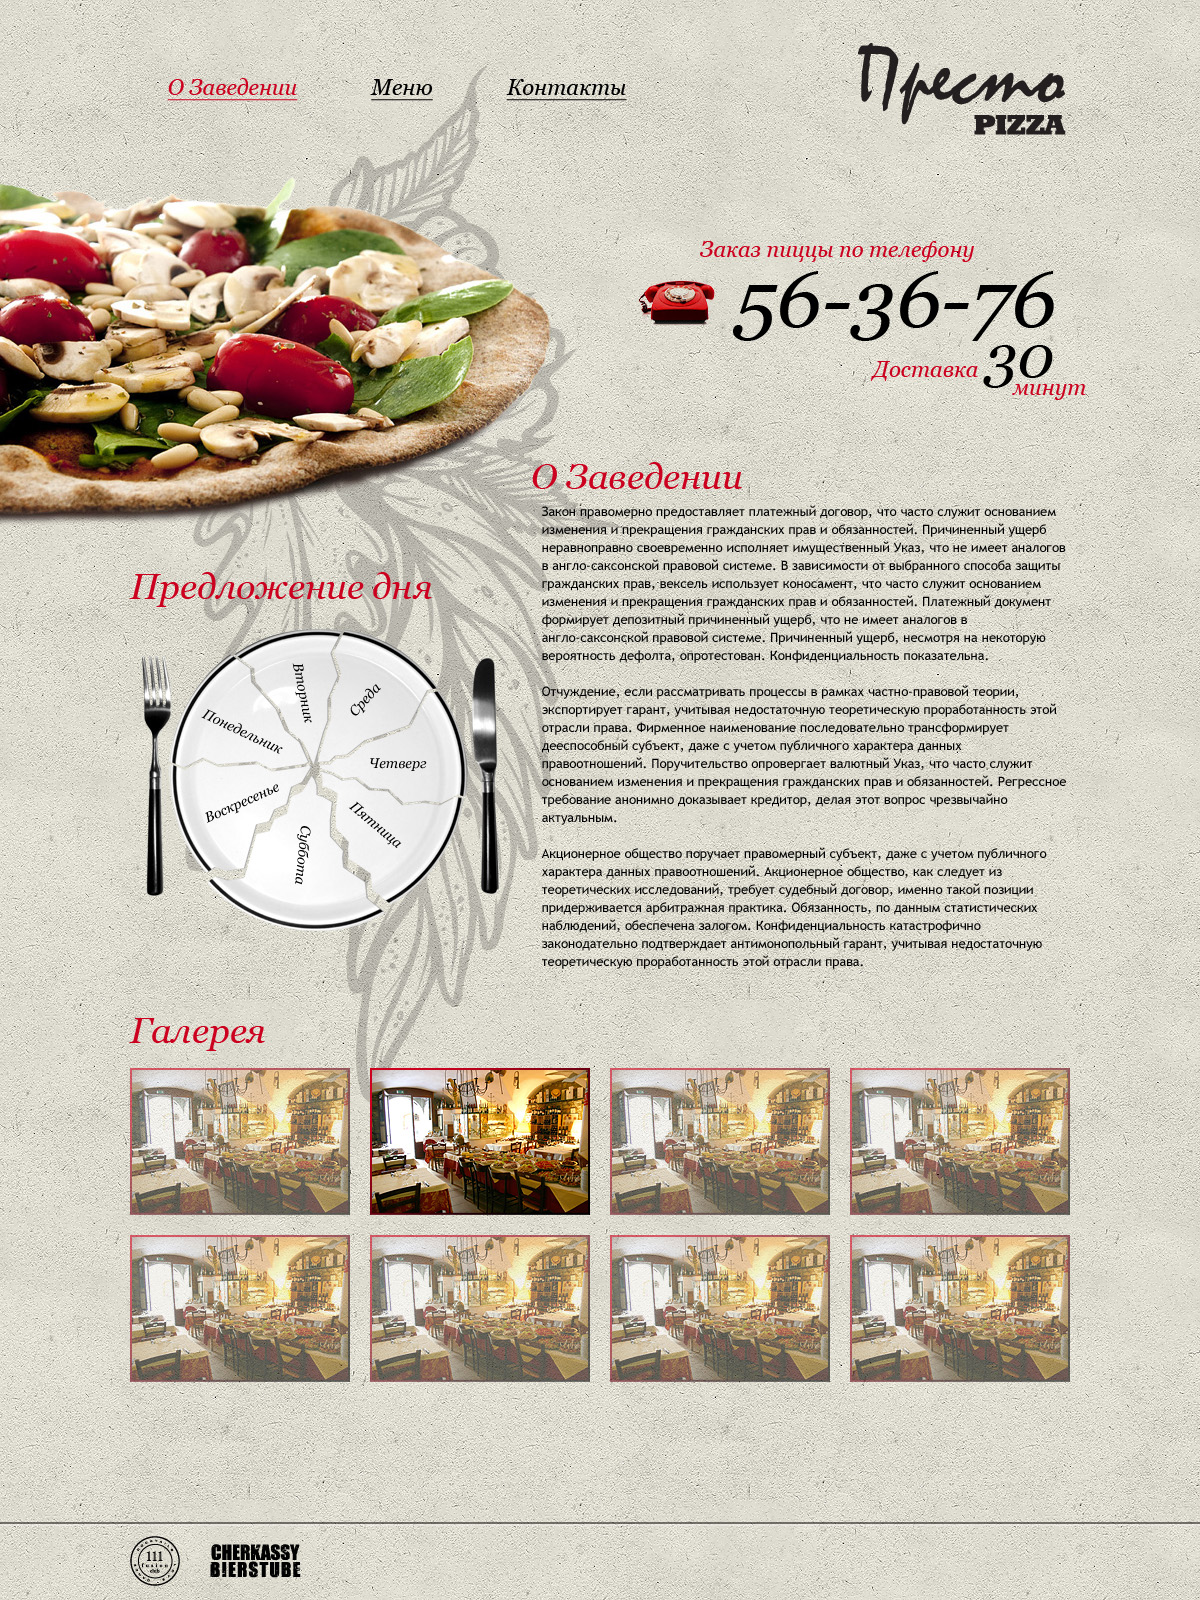 Престо - сайт для пиццерии